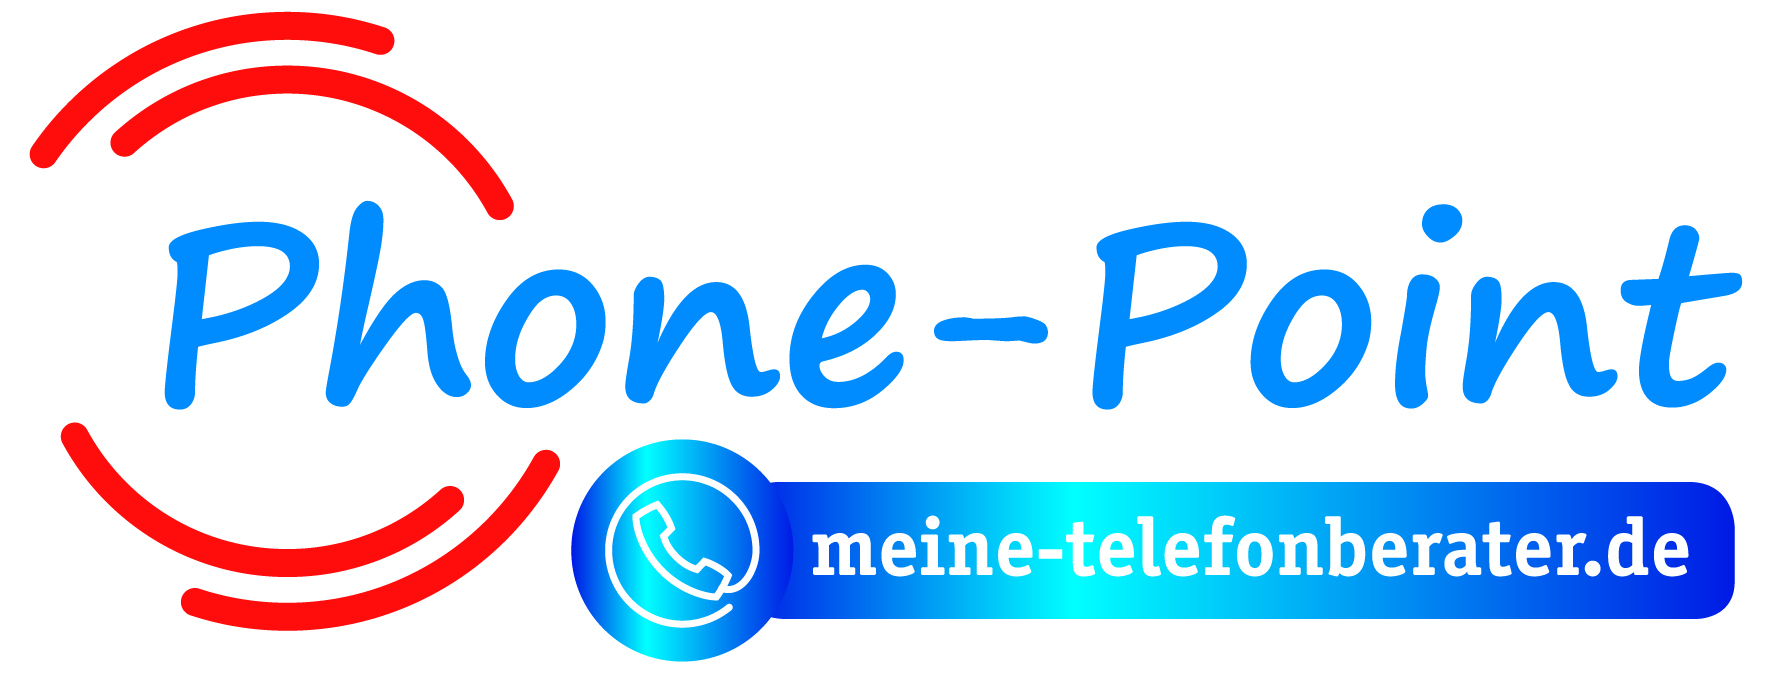 Phone Point Logo